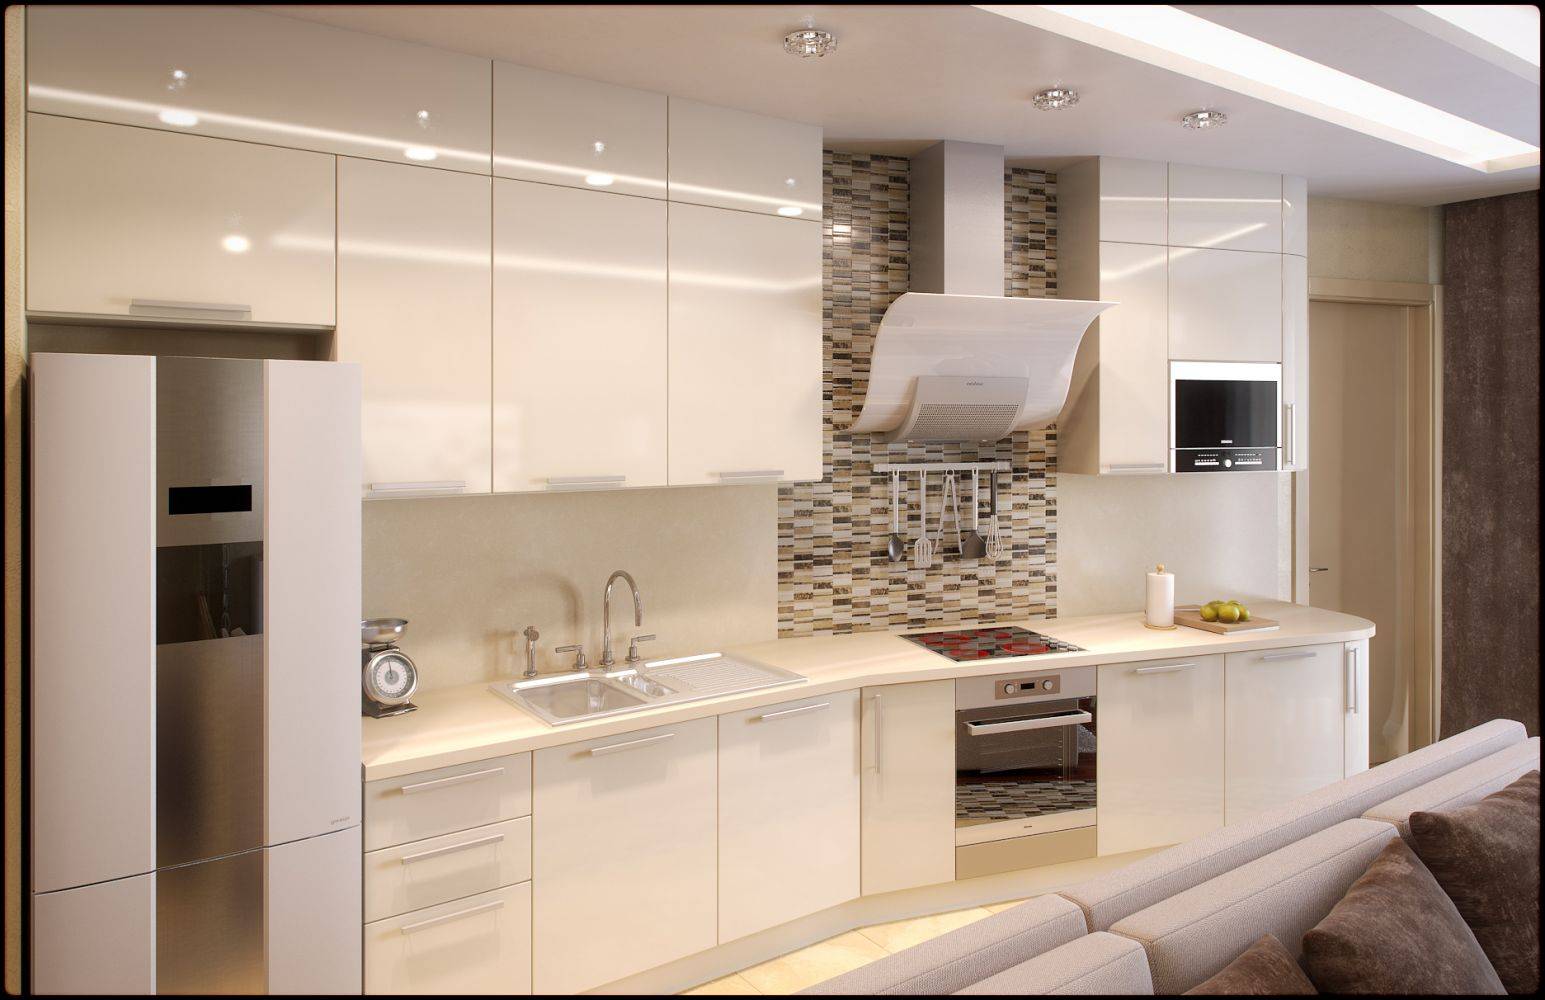 Светлая кухня: интерьер кухни-столовой в светлых тонах в стиле современная классика  - 29 фото